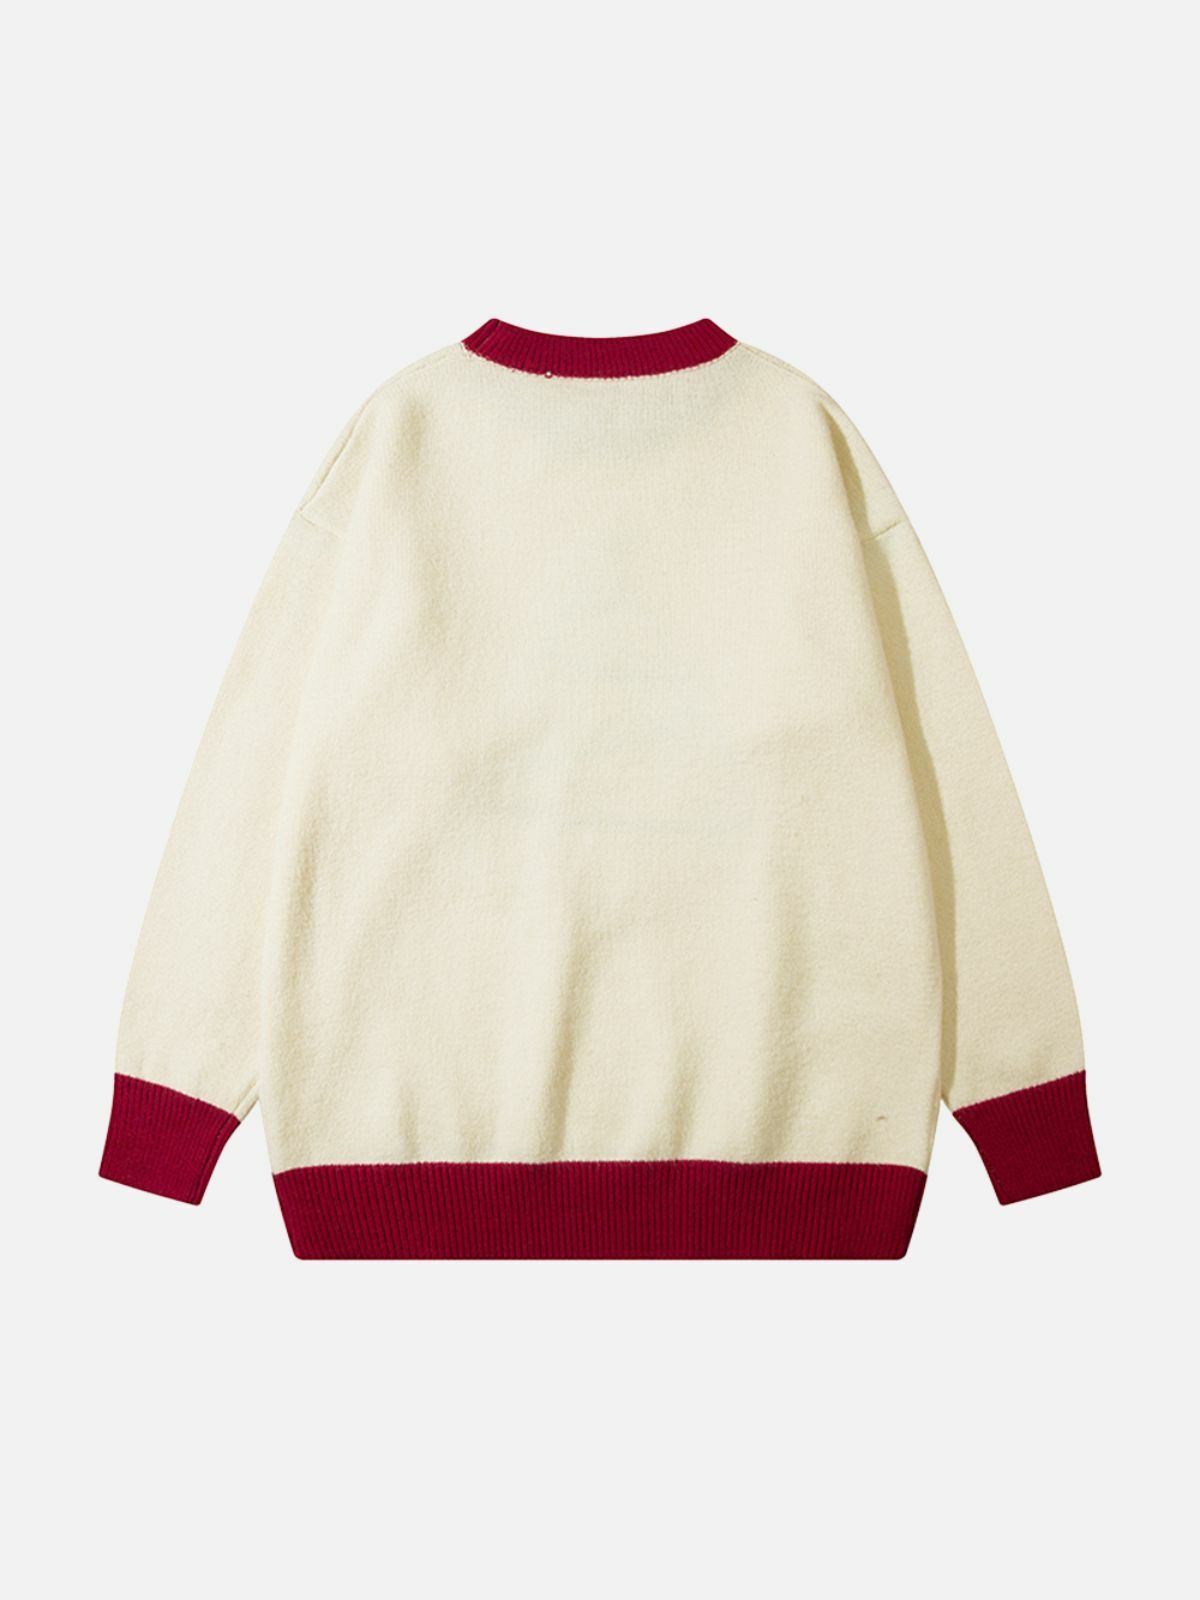 evergreen delight sweater festive & vibrant y2k fashion 8946